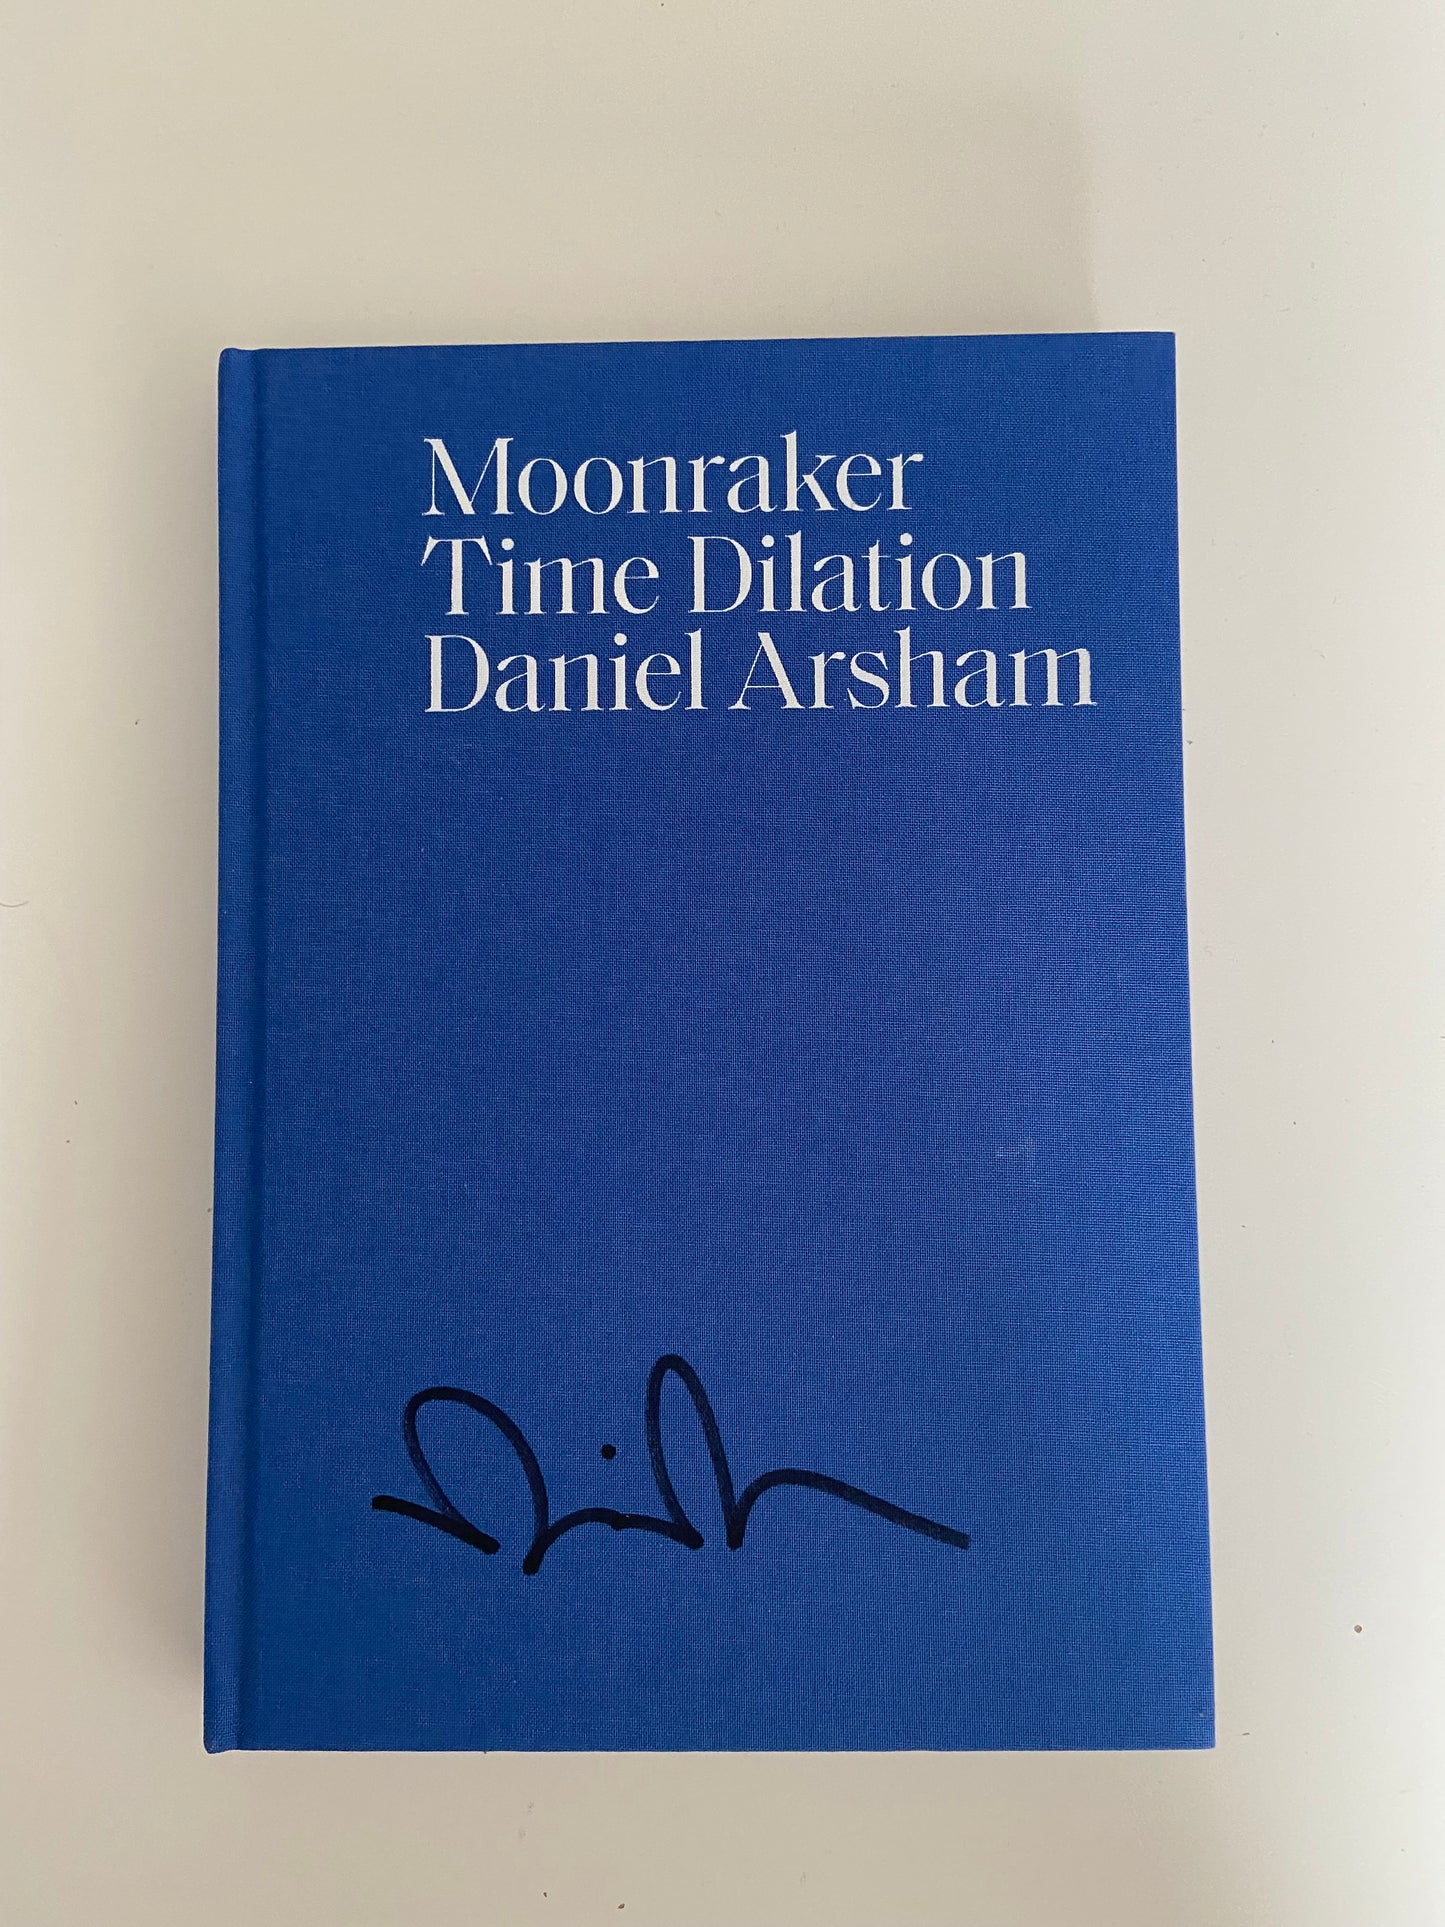 Daniel Arsham Moonraker Time Dilation Livre signé